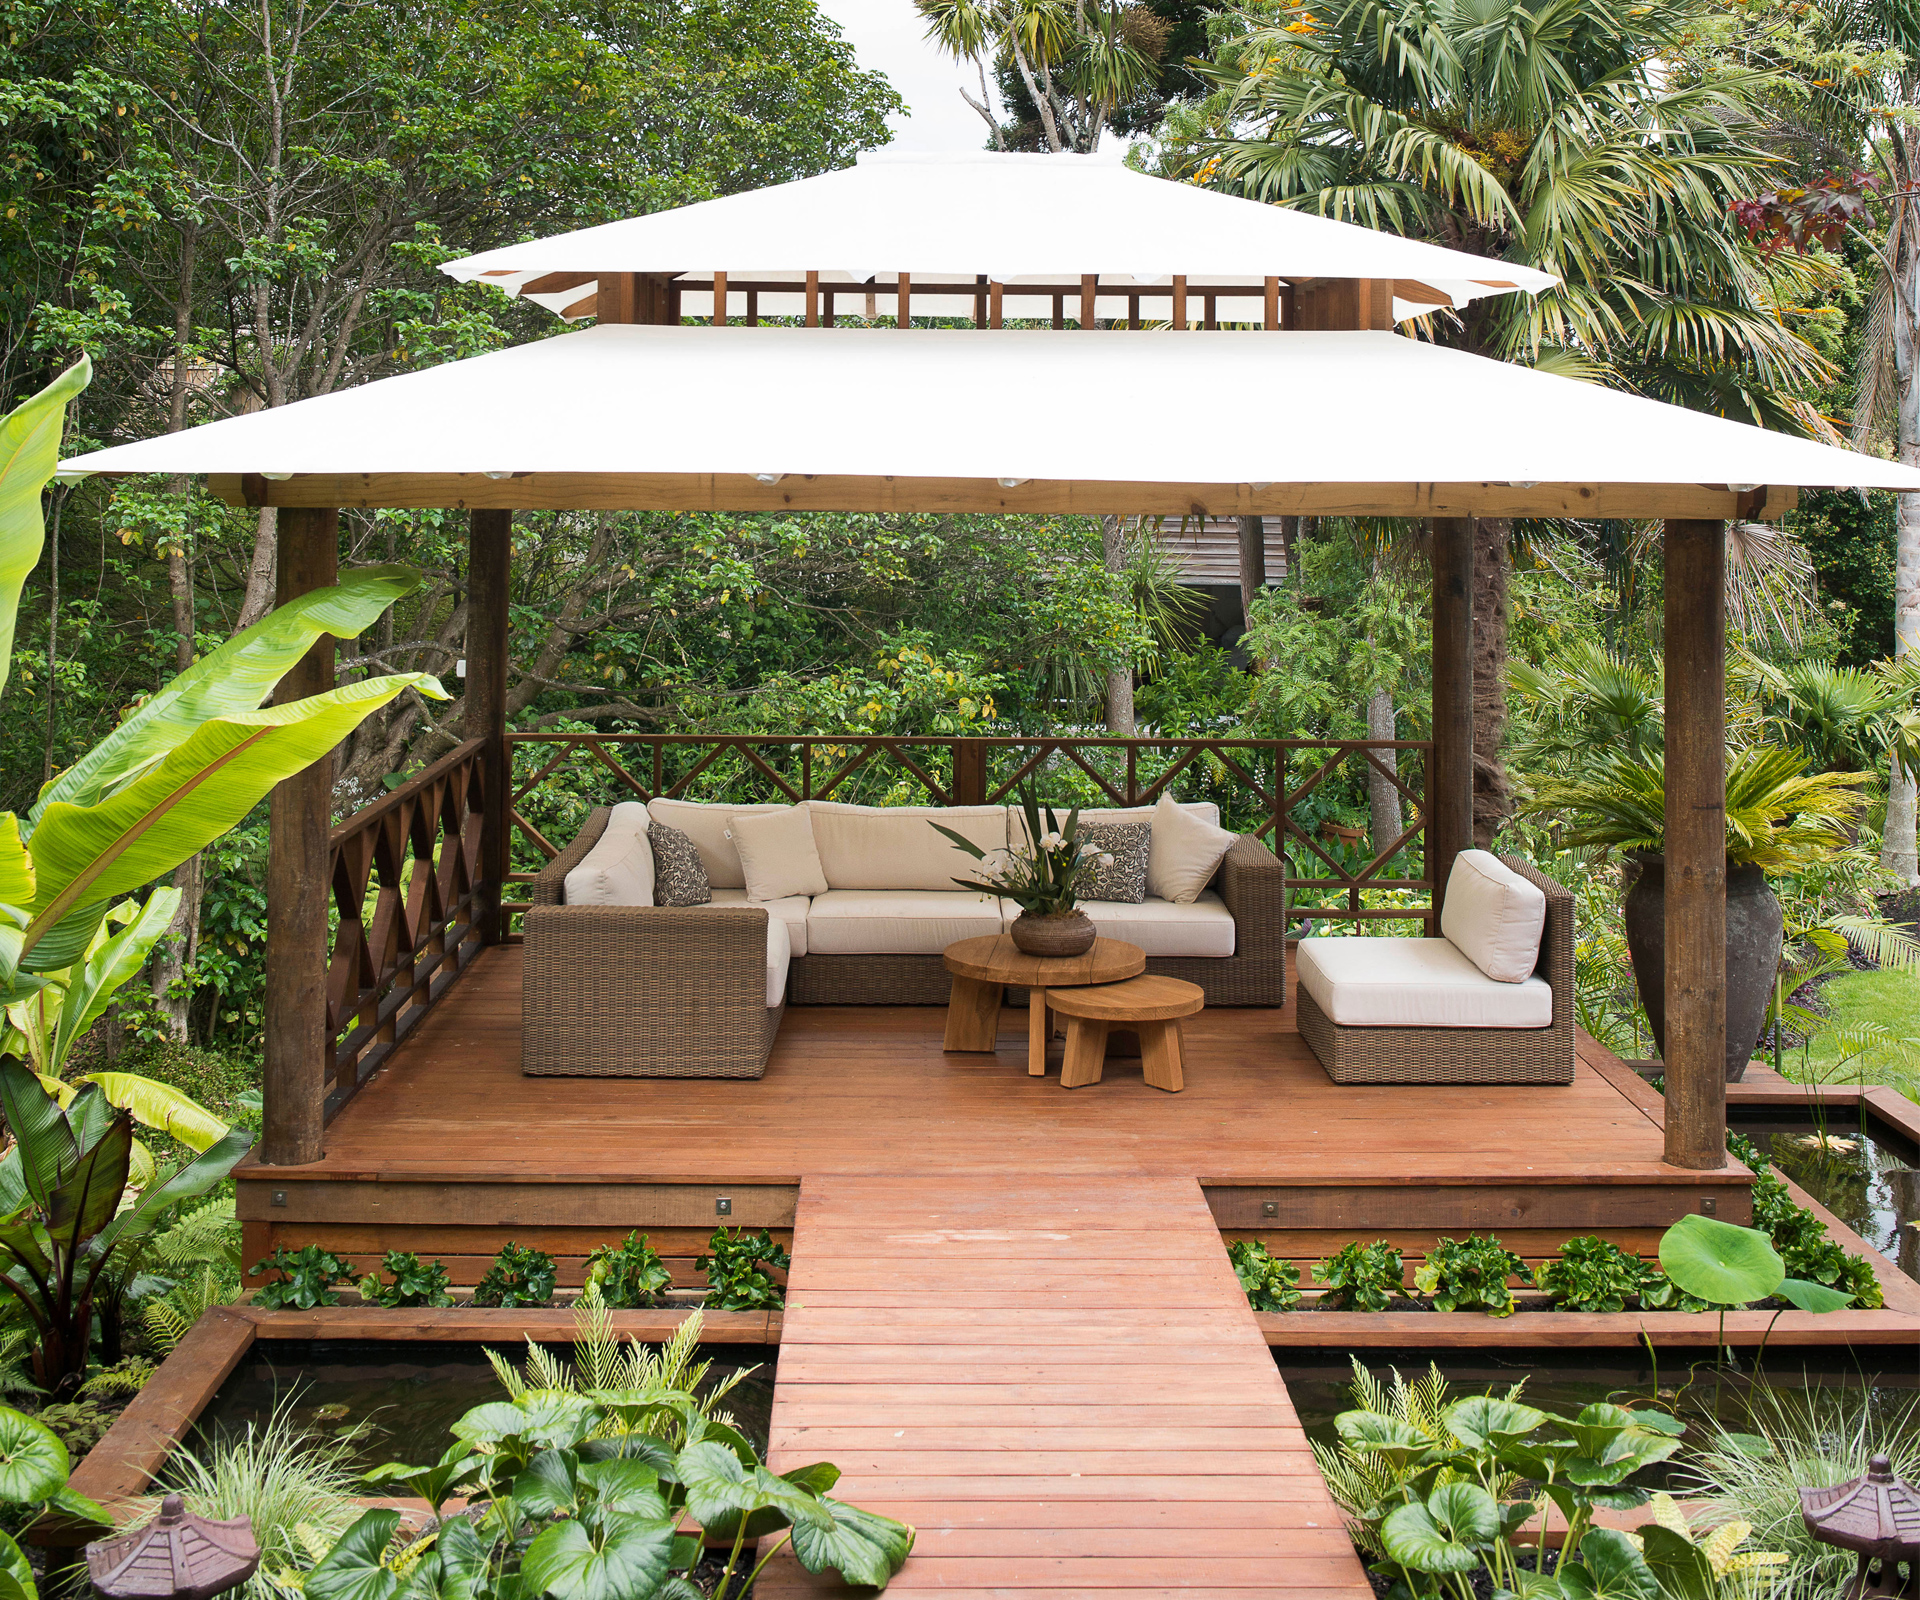 A lush Balinese style garden hidden in an Auckland backyard